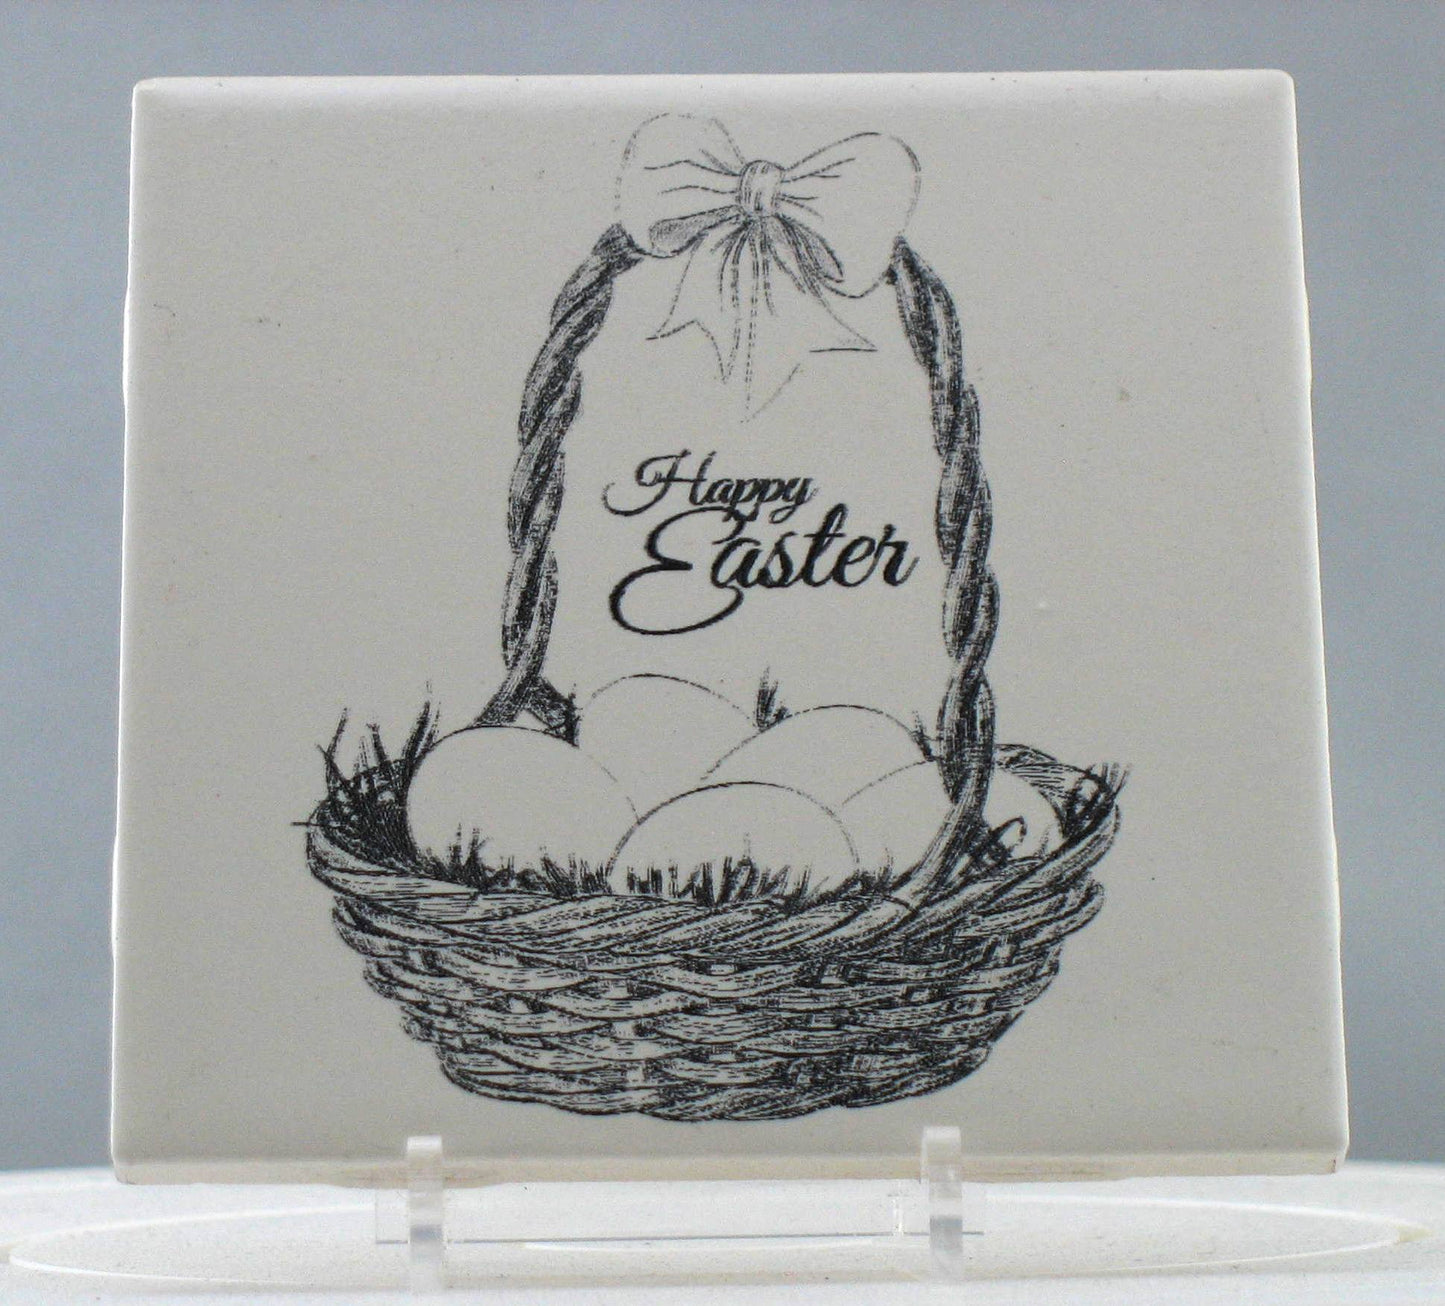 Happy Easter Engraving on Laser Ceramic Tile